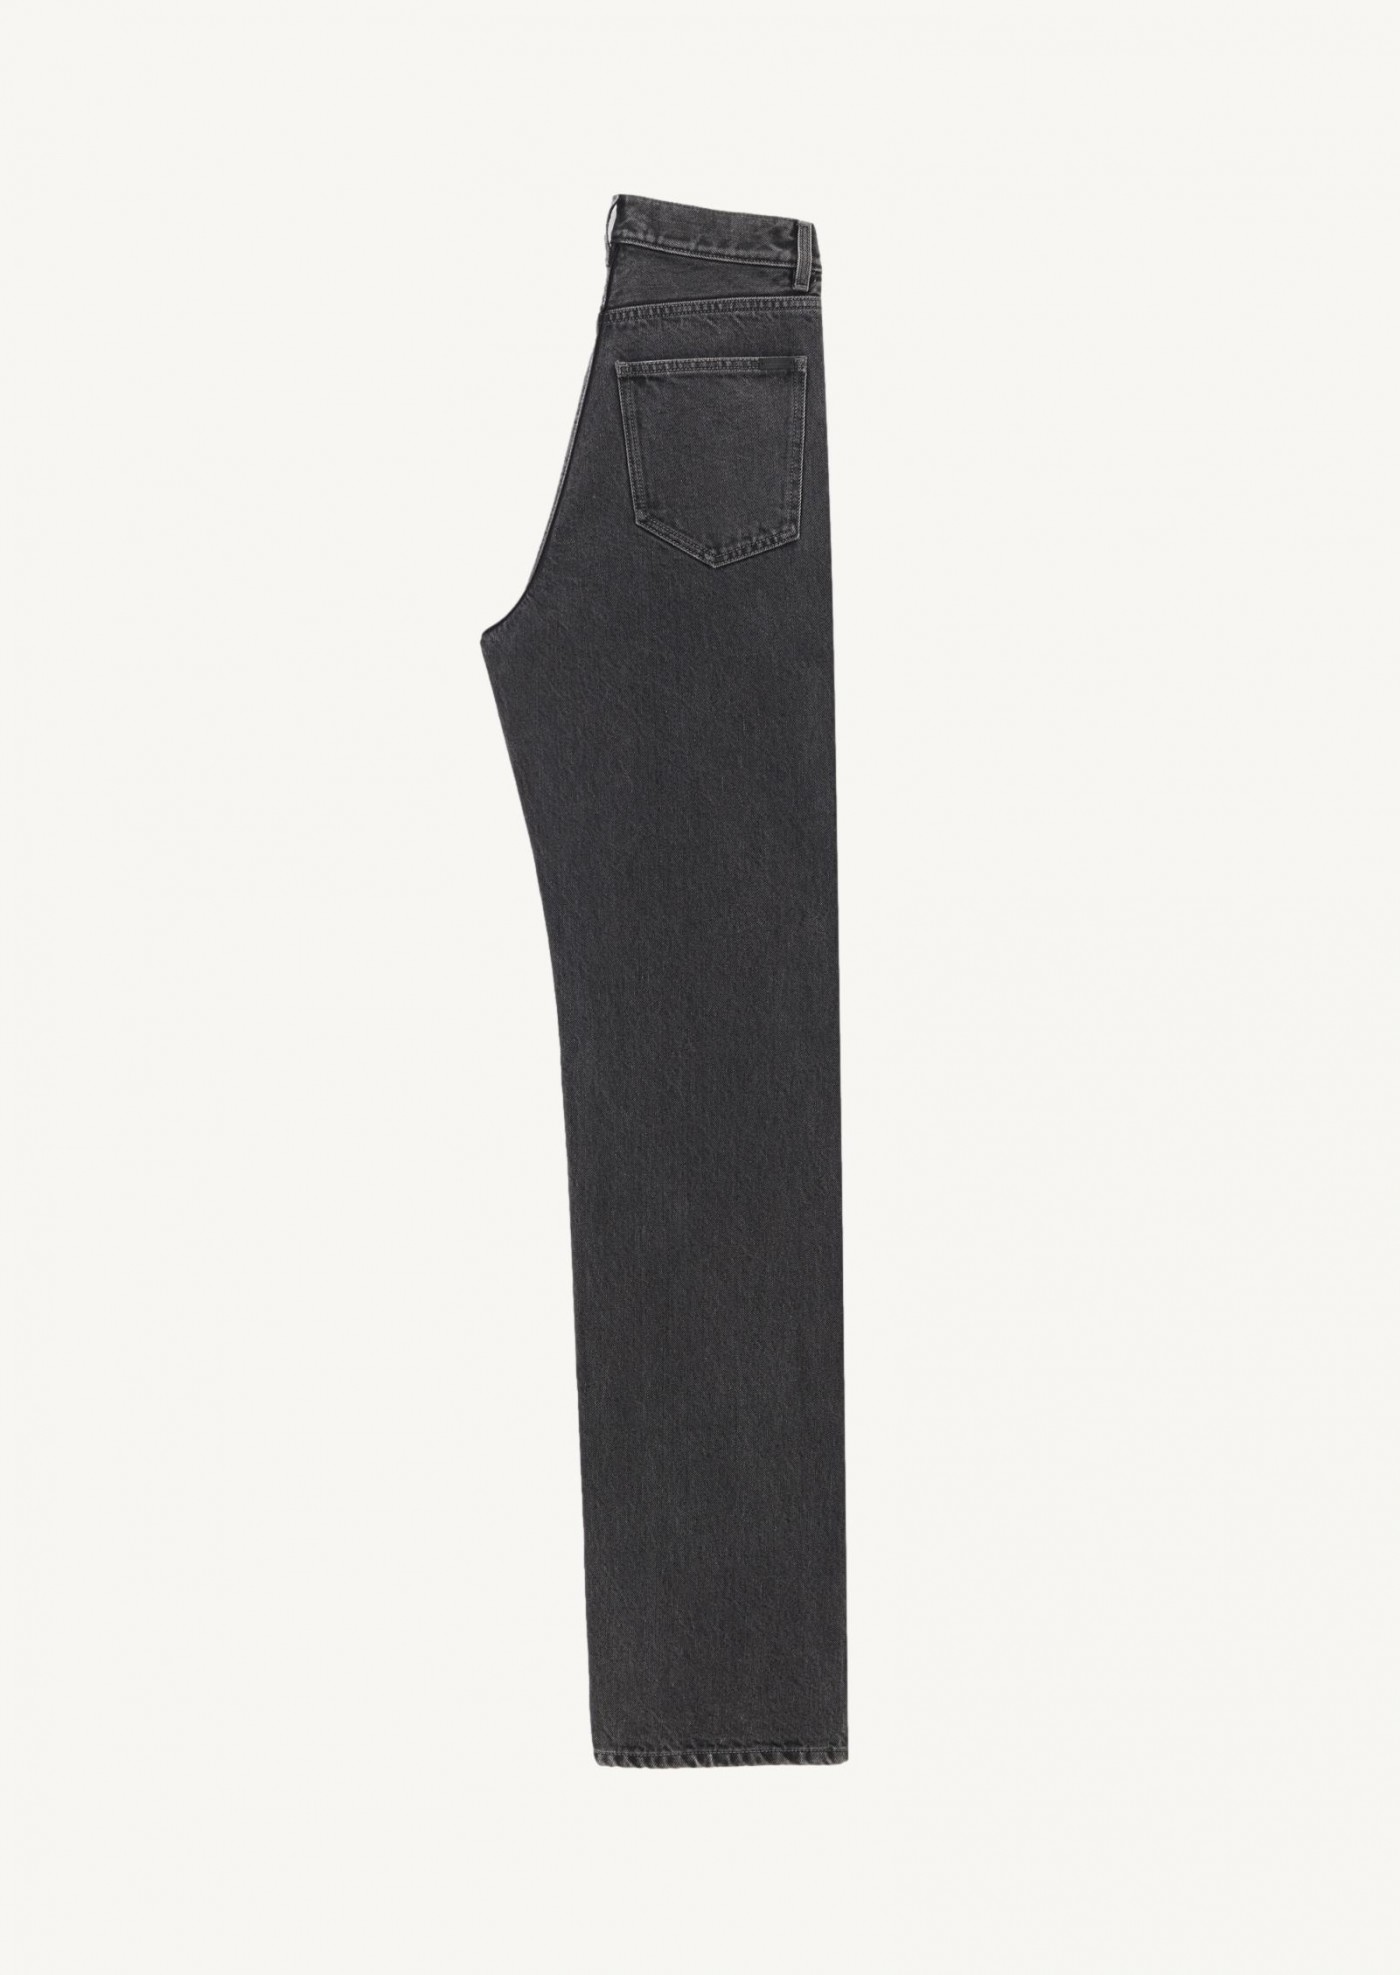 90's black v-waist long baggy denim jeans